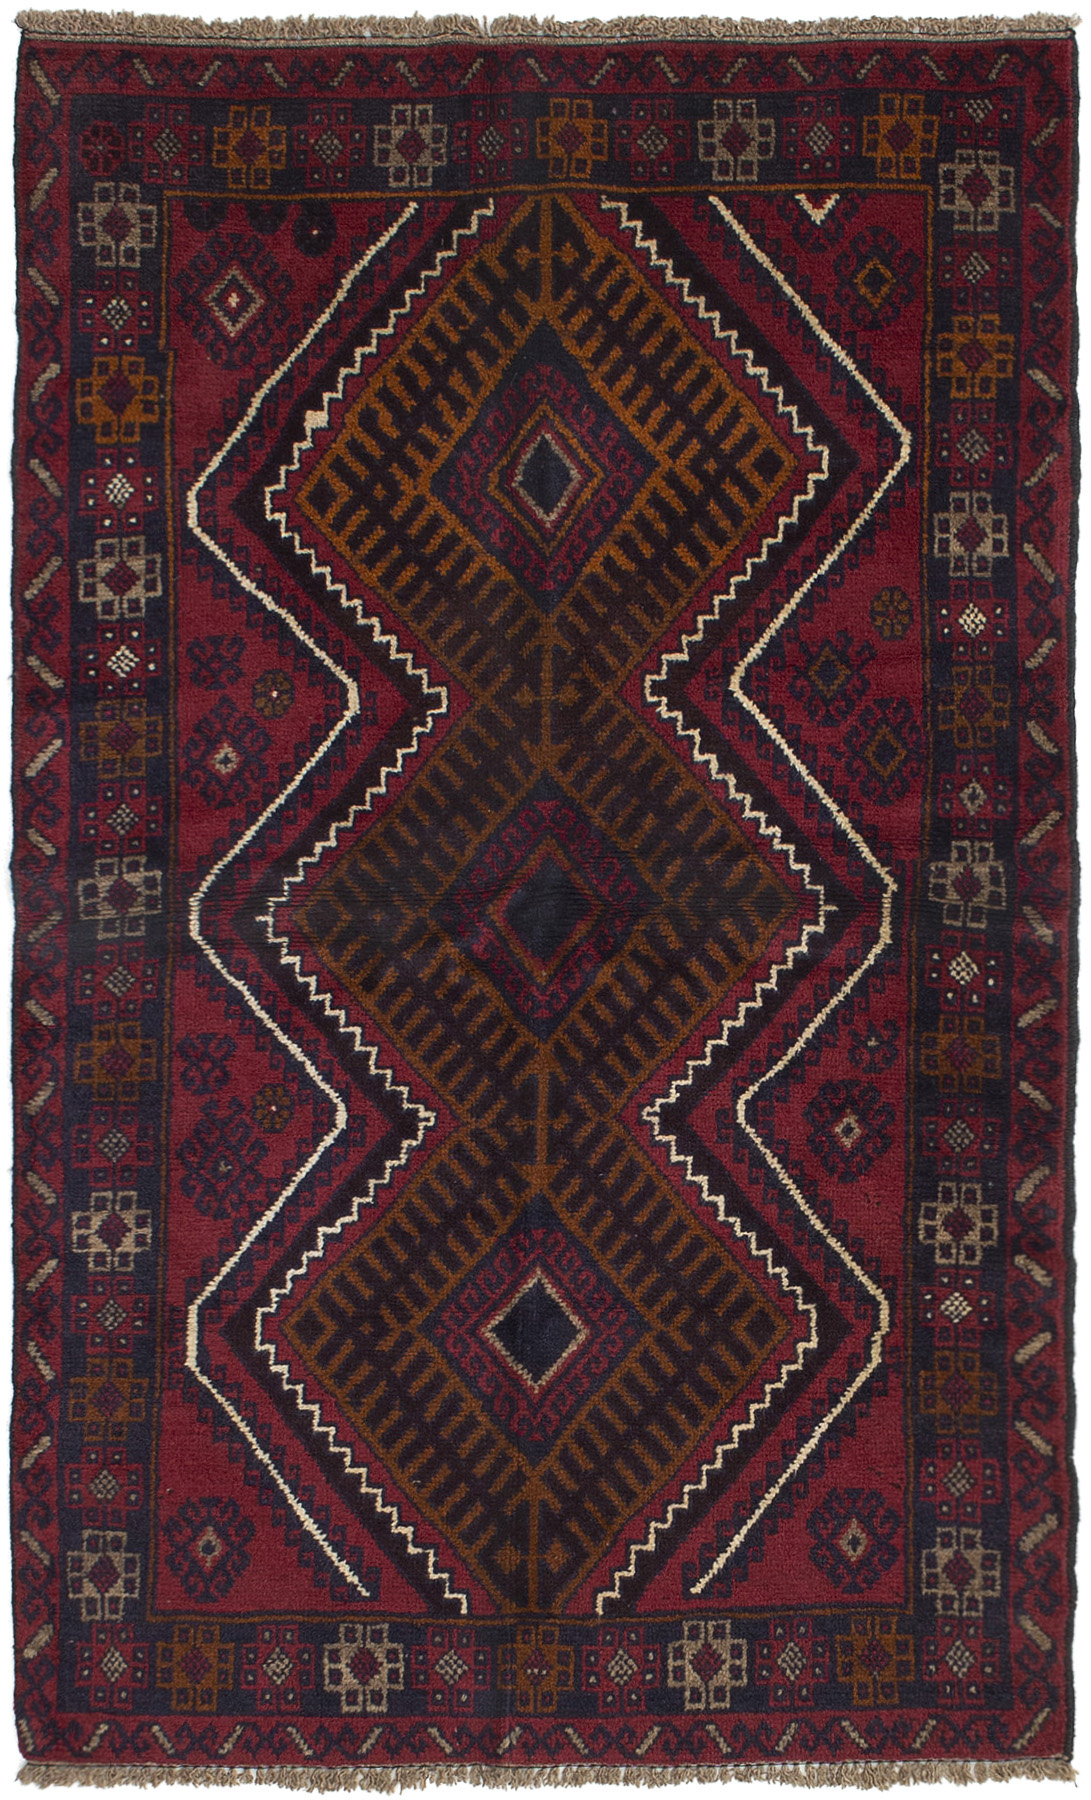 Hand-knotted Kazak Dark Red Wool Rug 3'7" x 5'11"  Size: 3'7" x 5'11"  